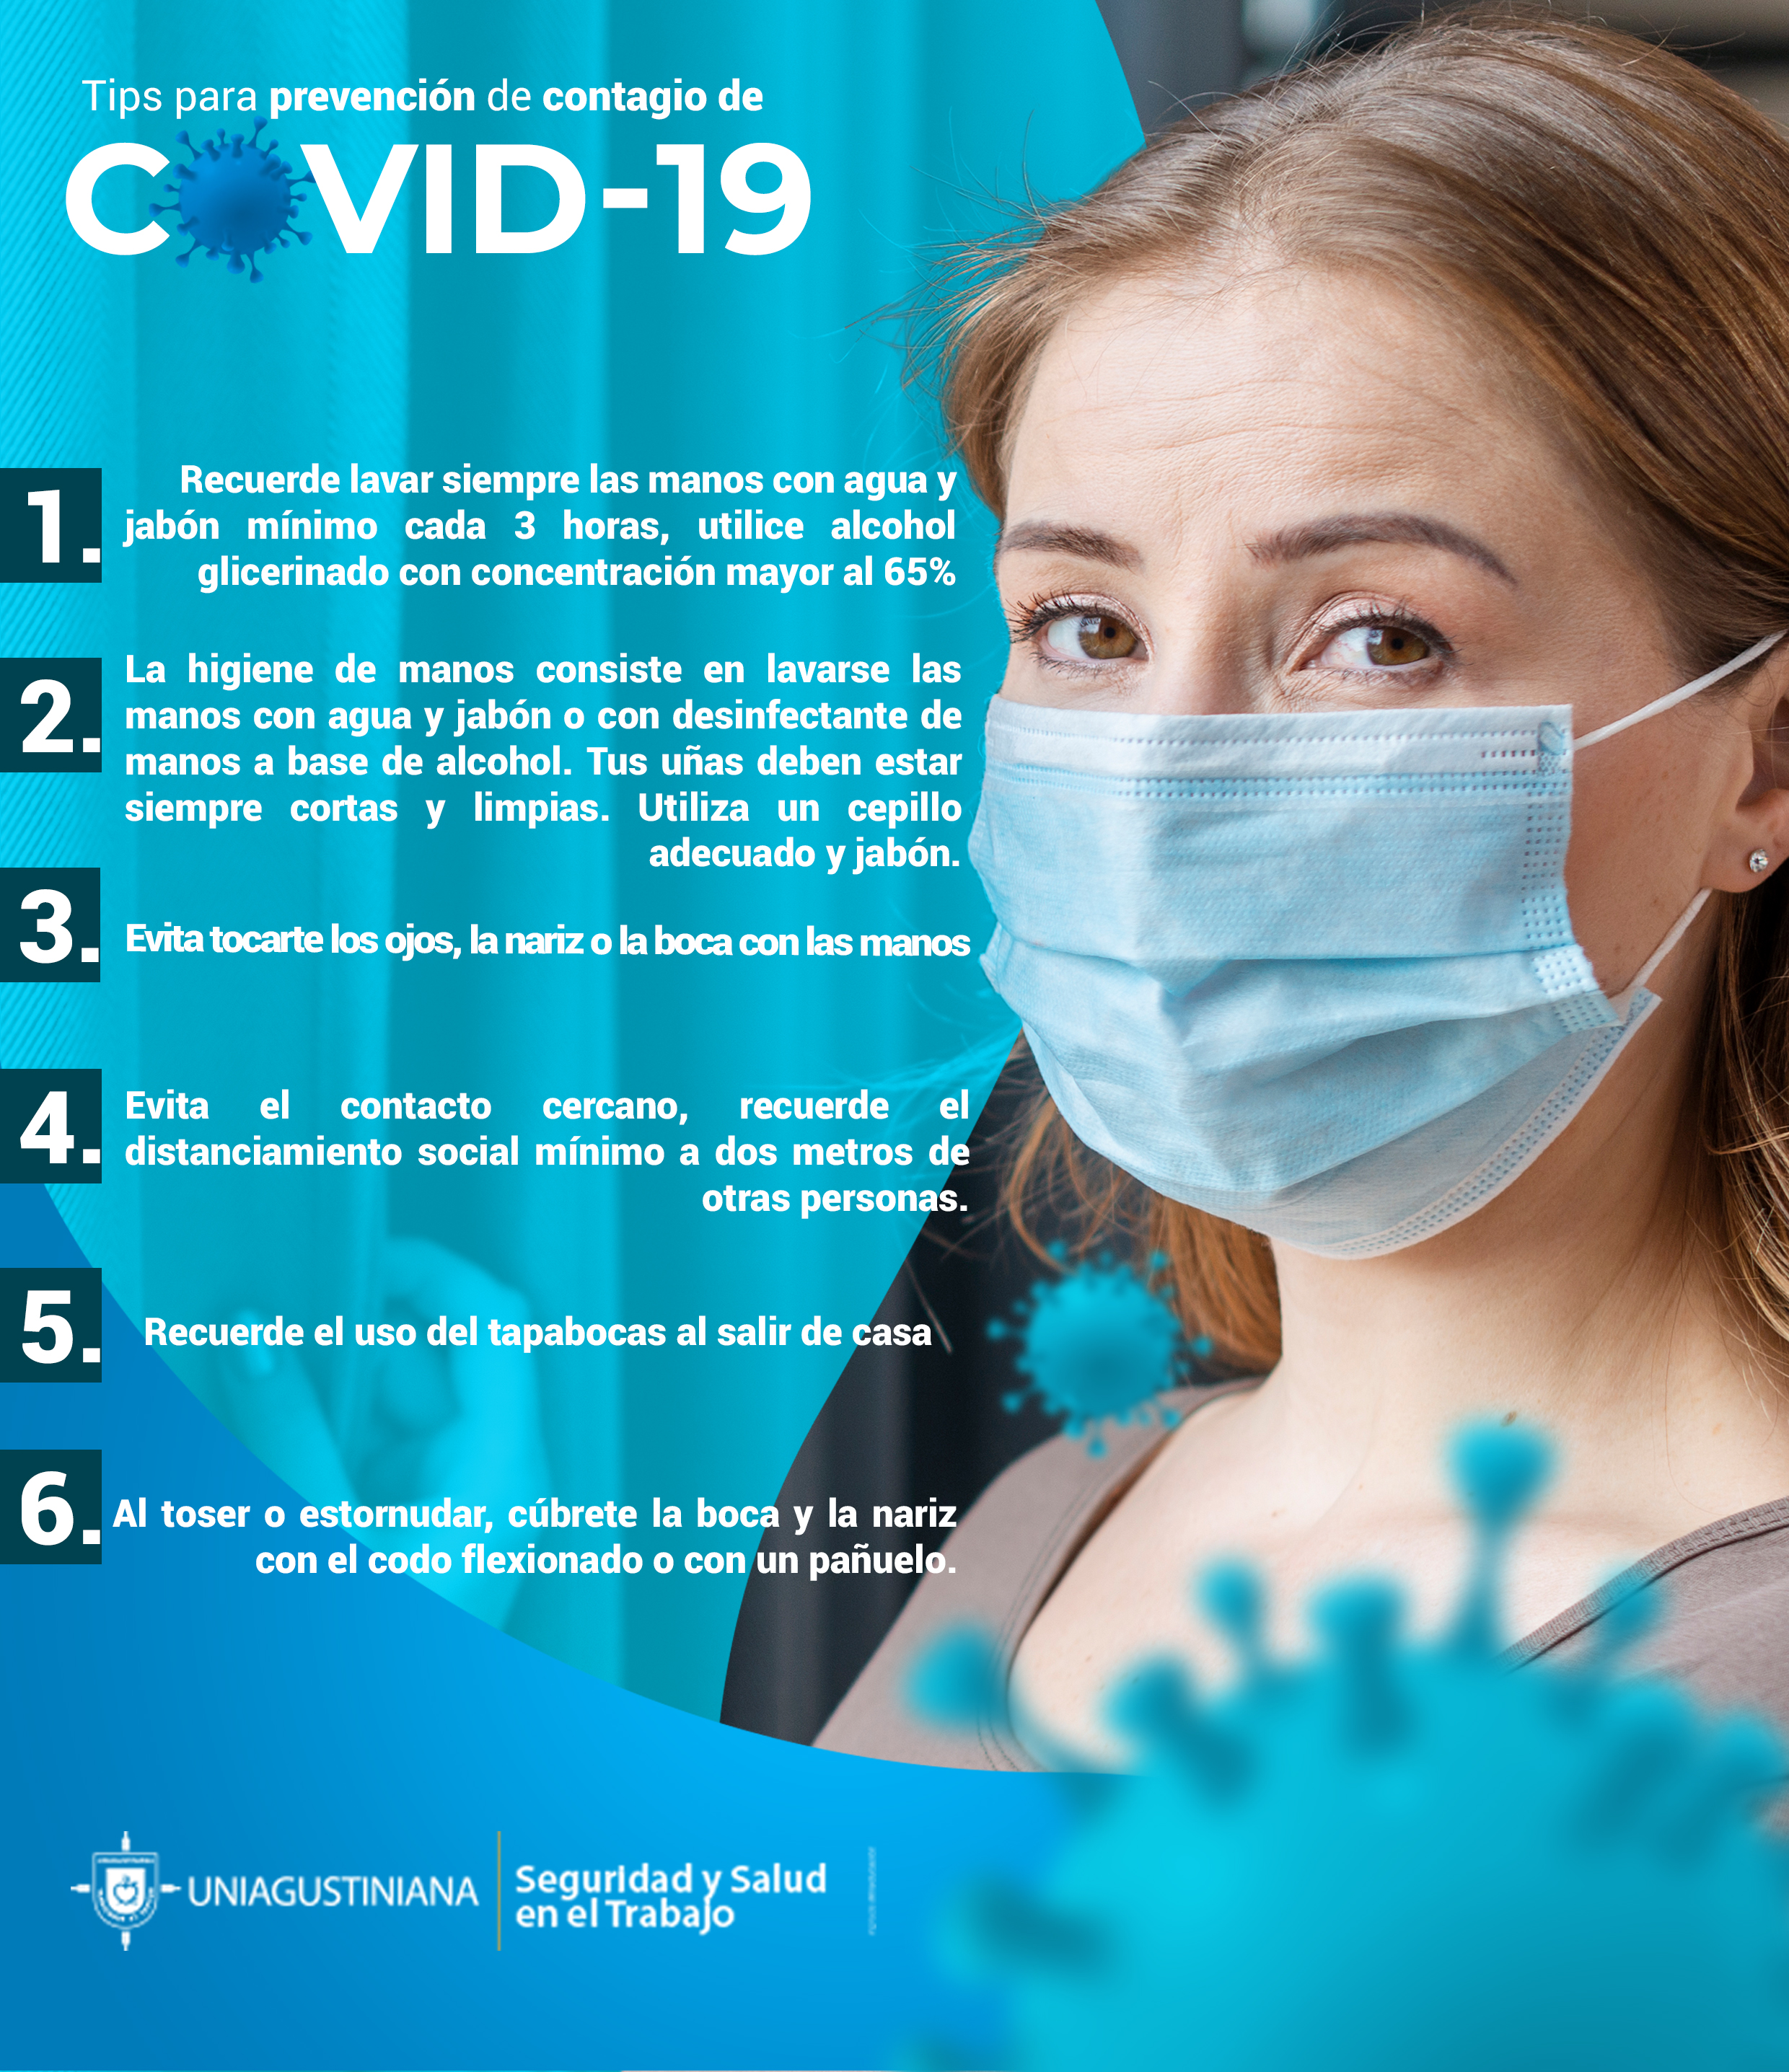 Tips para prevención de contagio de Covid-19